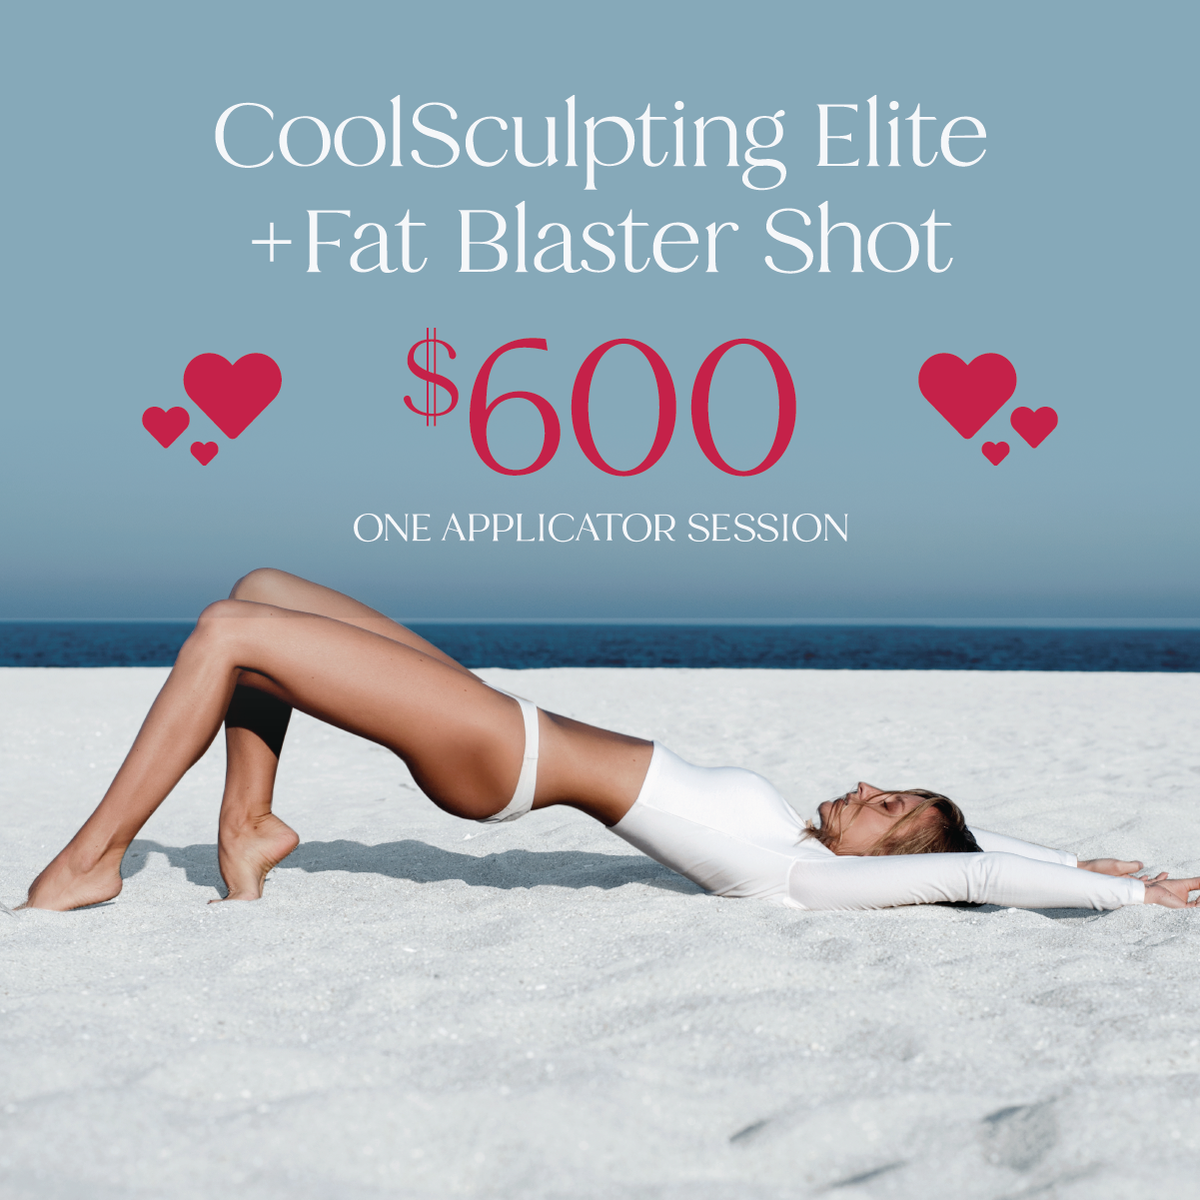 CoolSculpting Elite + Fat Blaster Shot